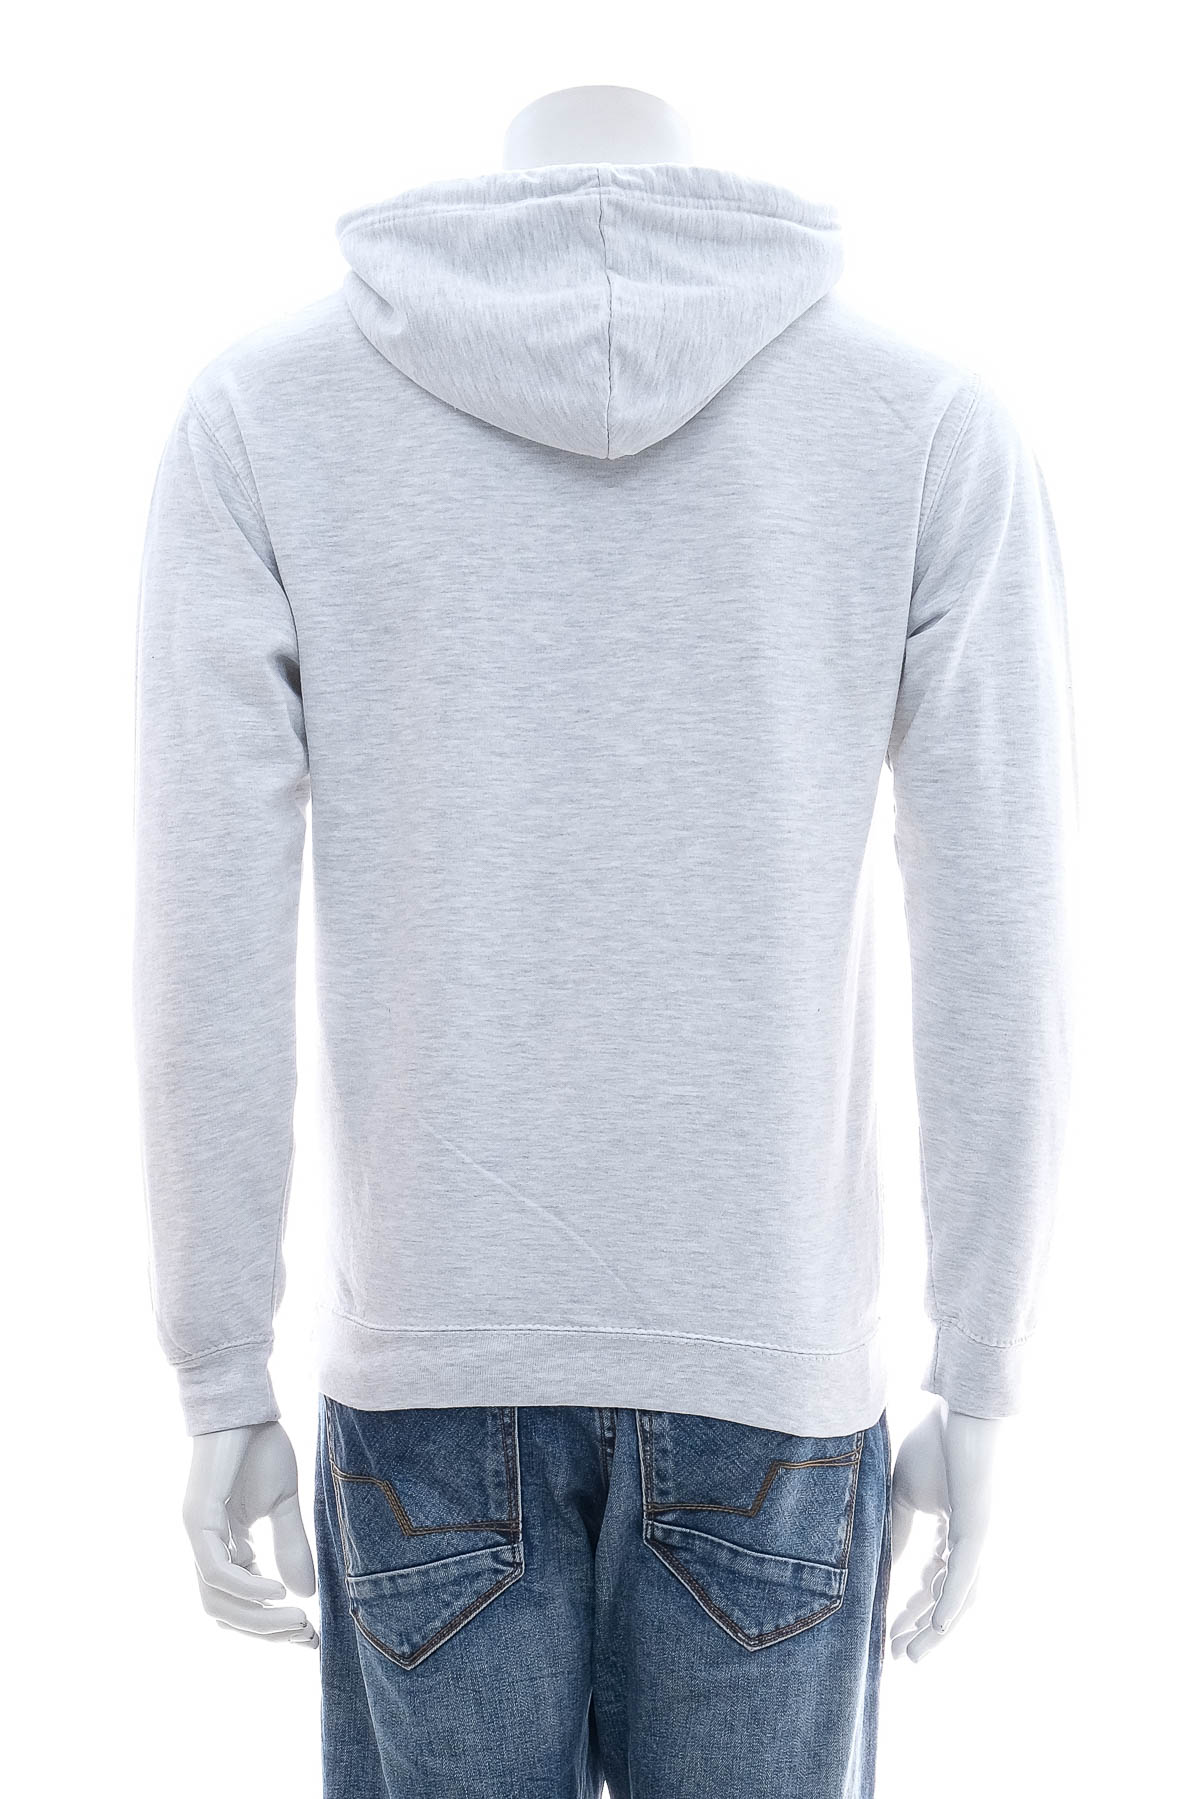 Men's sweatshirt - 1